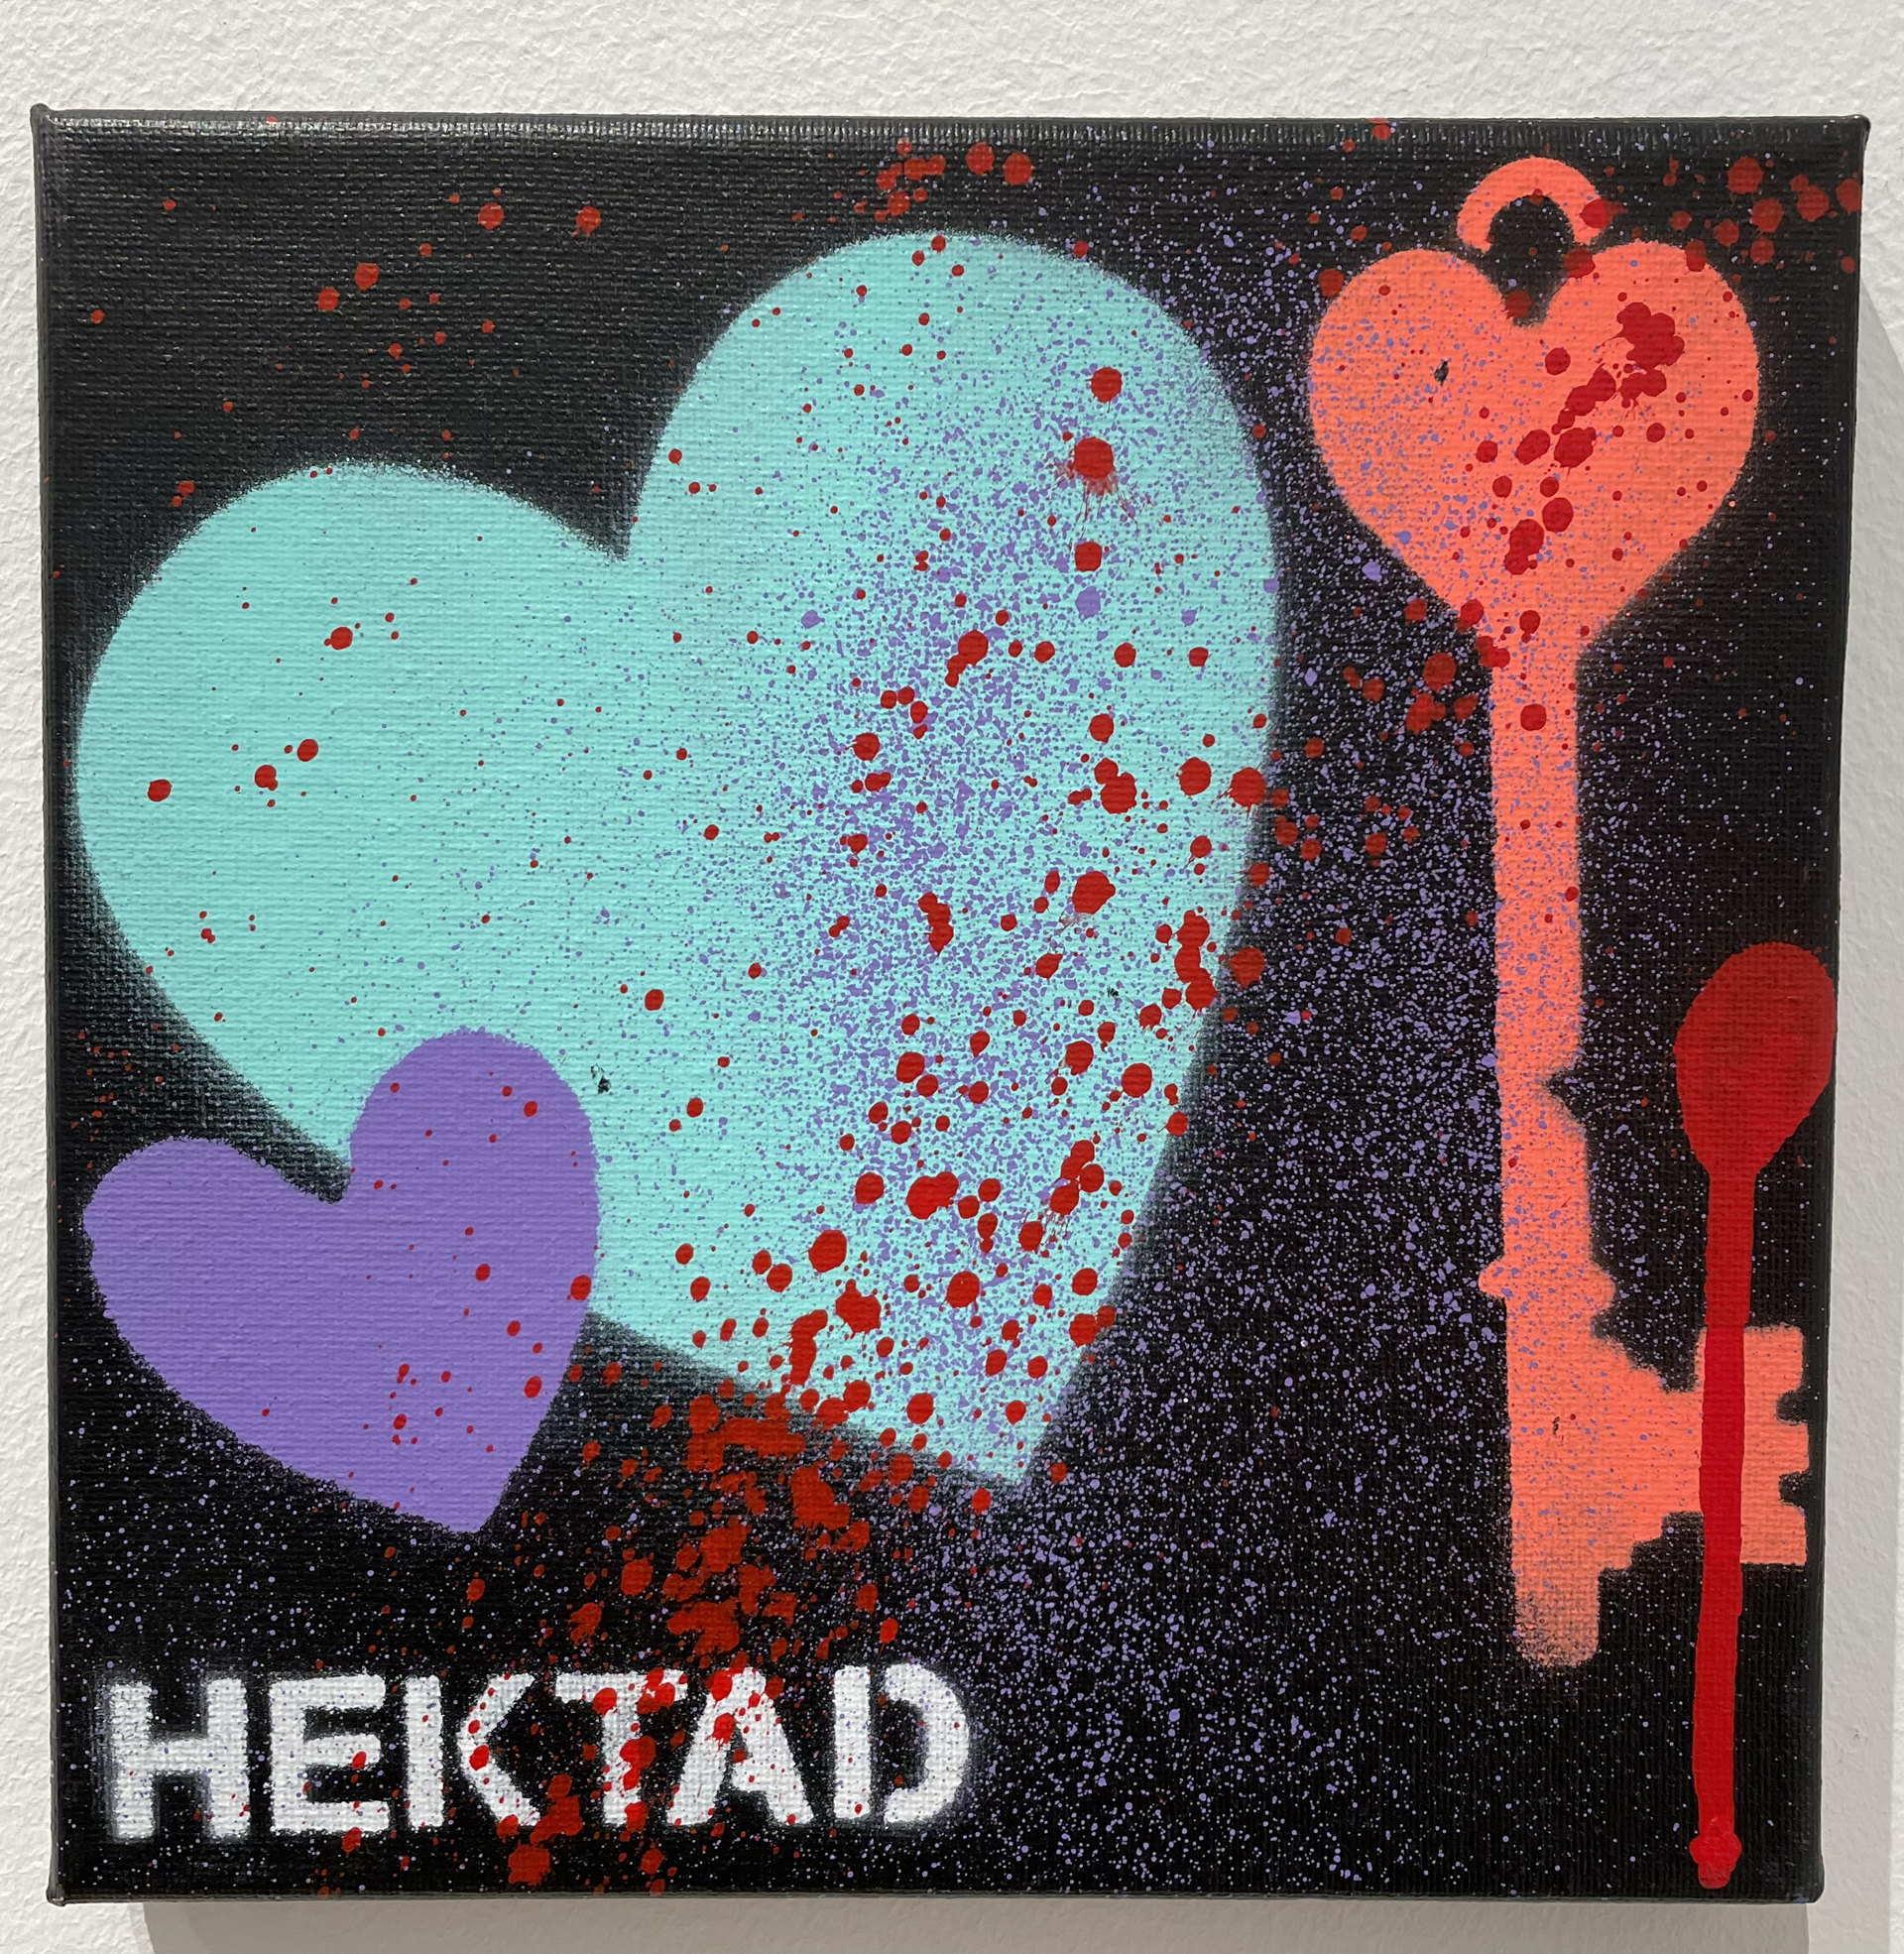 Key to my Heart 2 by HEKTAD